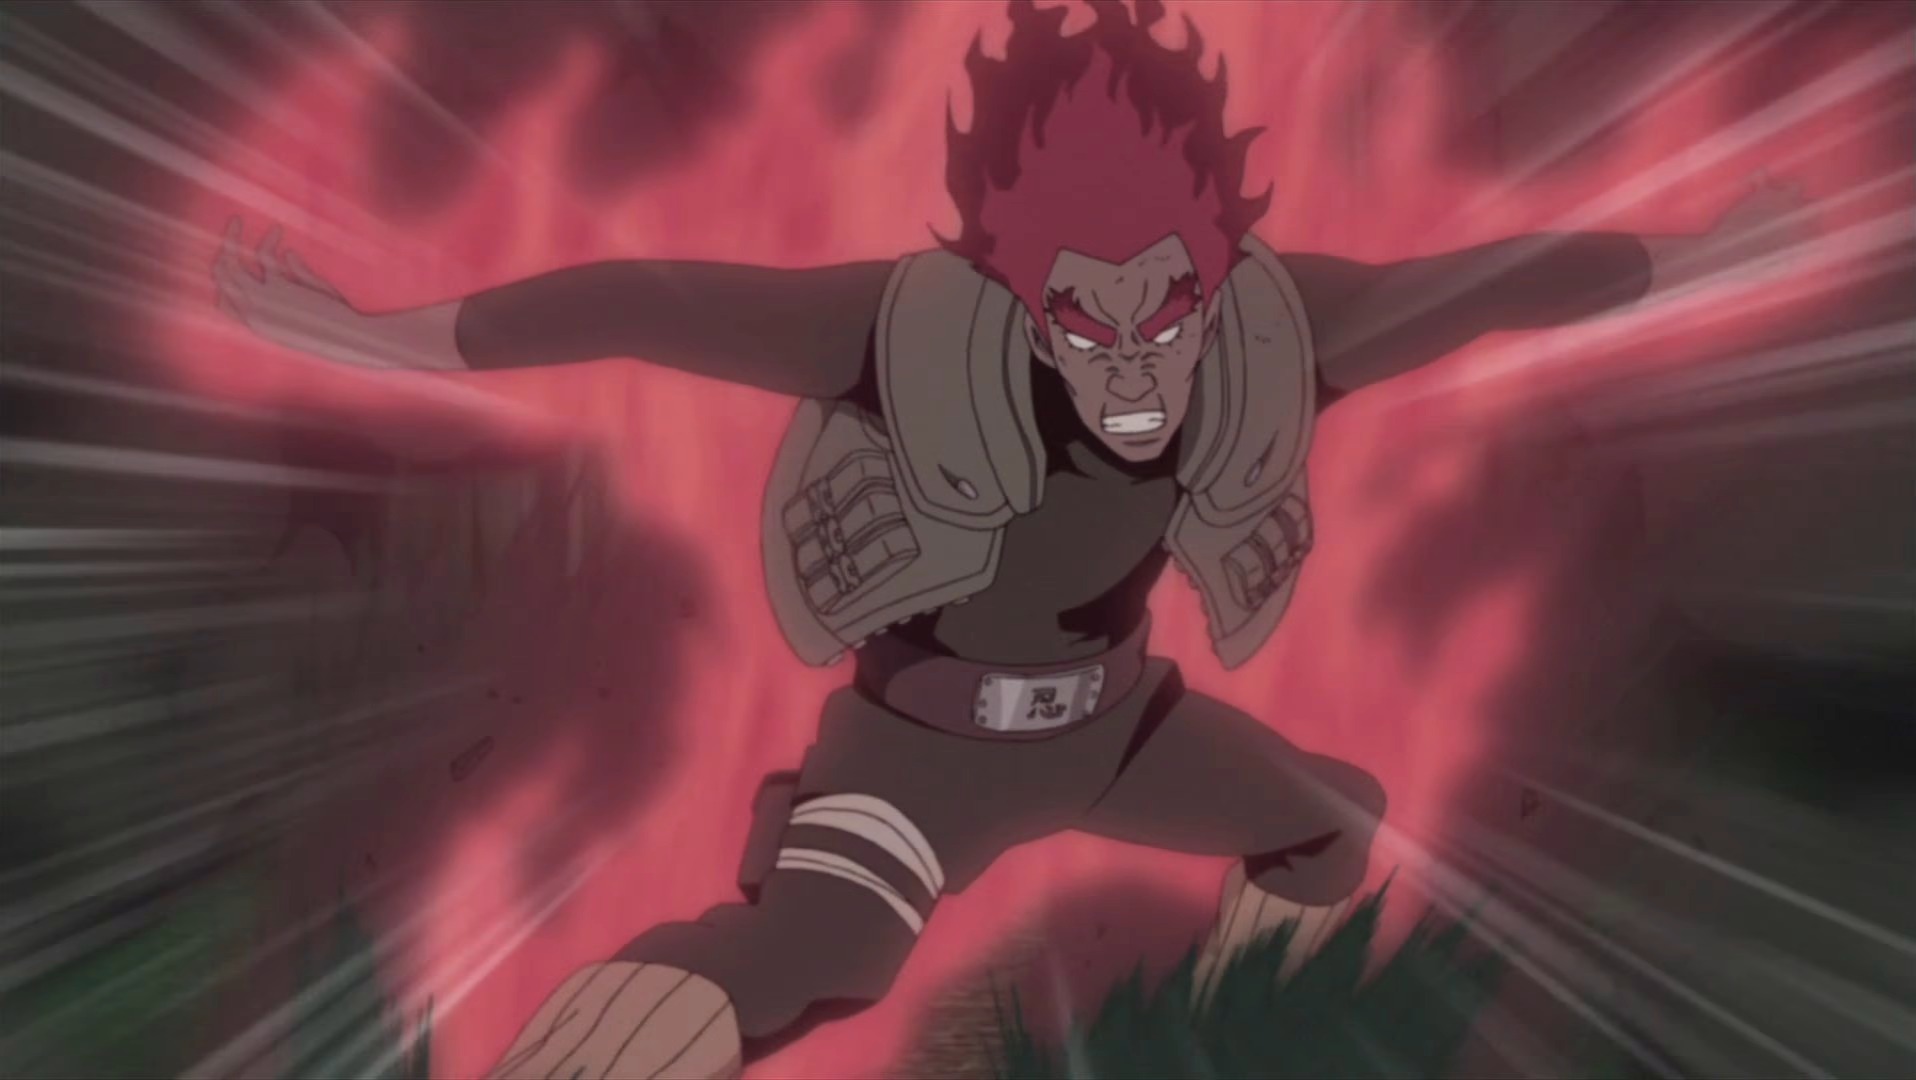 Might Guy estava usando pesos enquanto lutava contra Madara em Naruto?